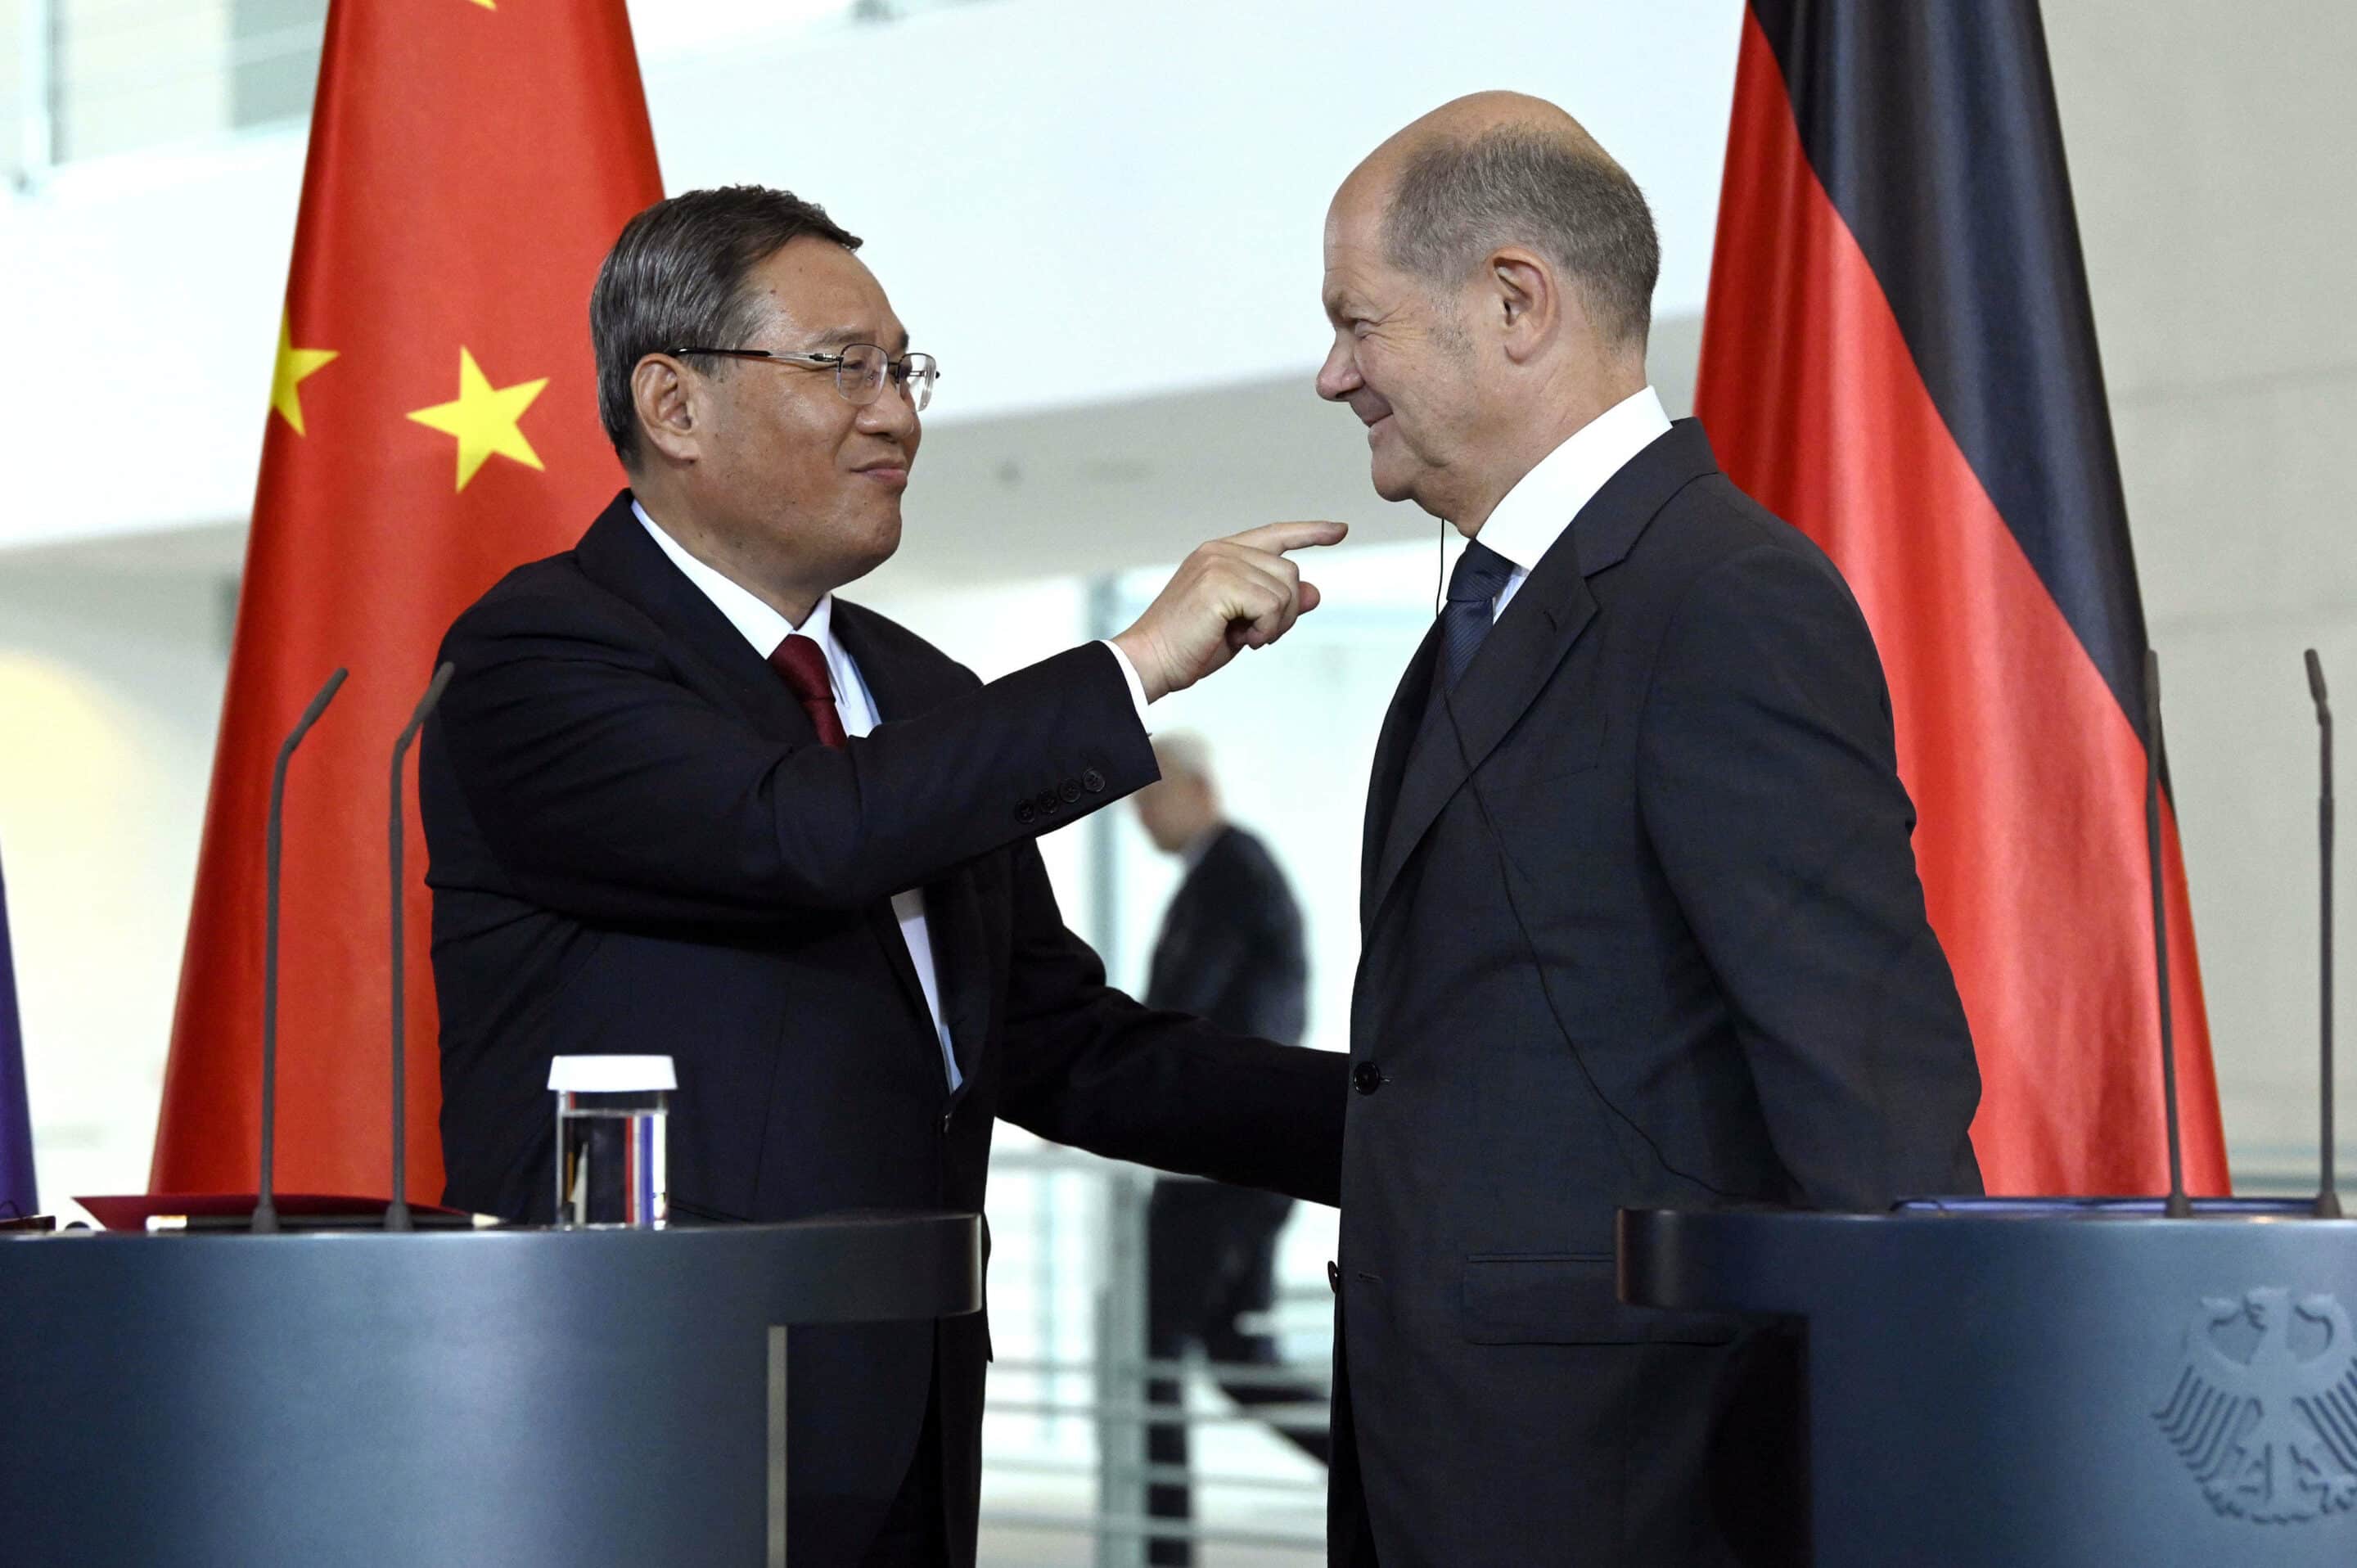 Le Premier ministre chinois et le chancelier allemand
Photo by snapshot/Future Image/F Kern/Shutterstock